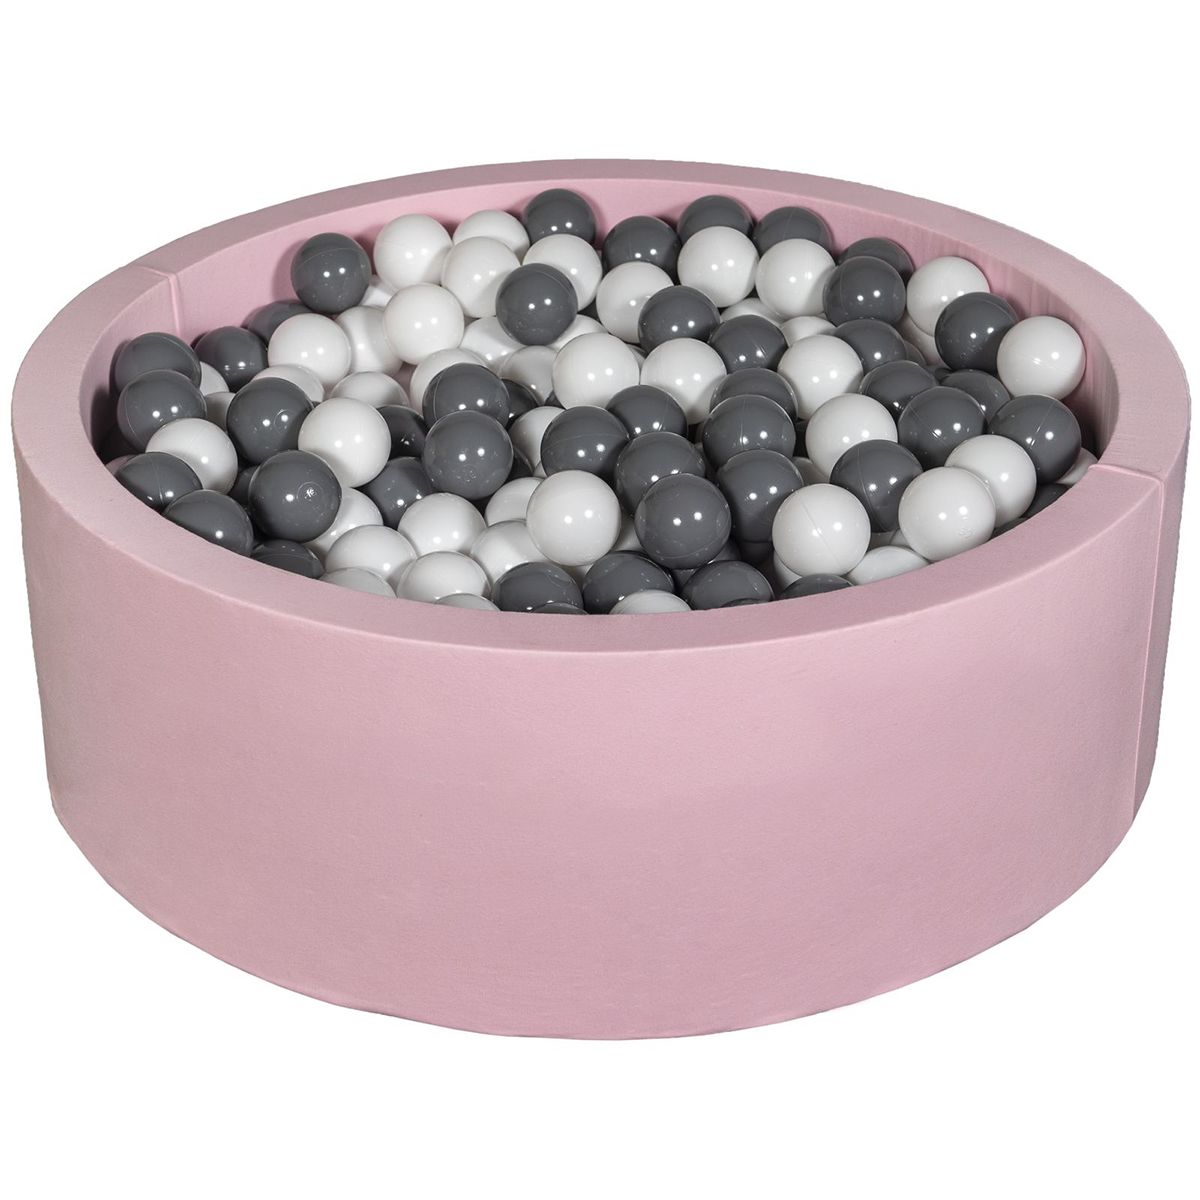  Piscine à balles Aire de jeu + 450 balles rose blanc,gris